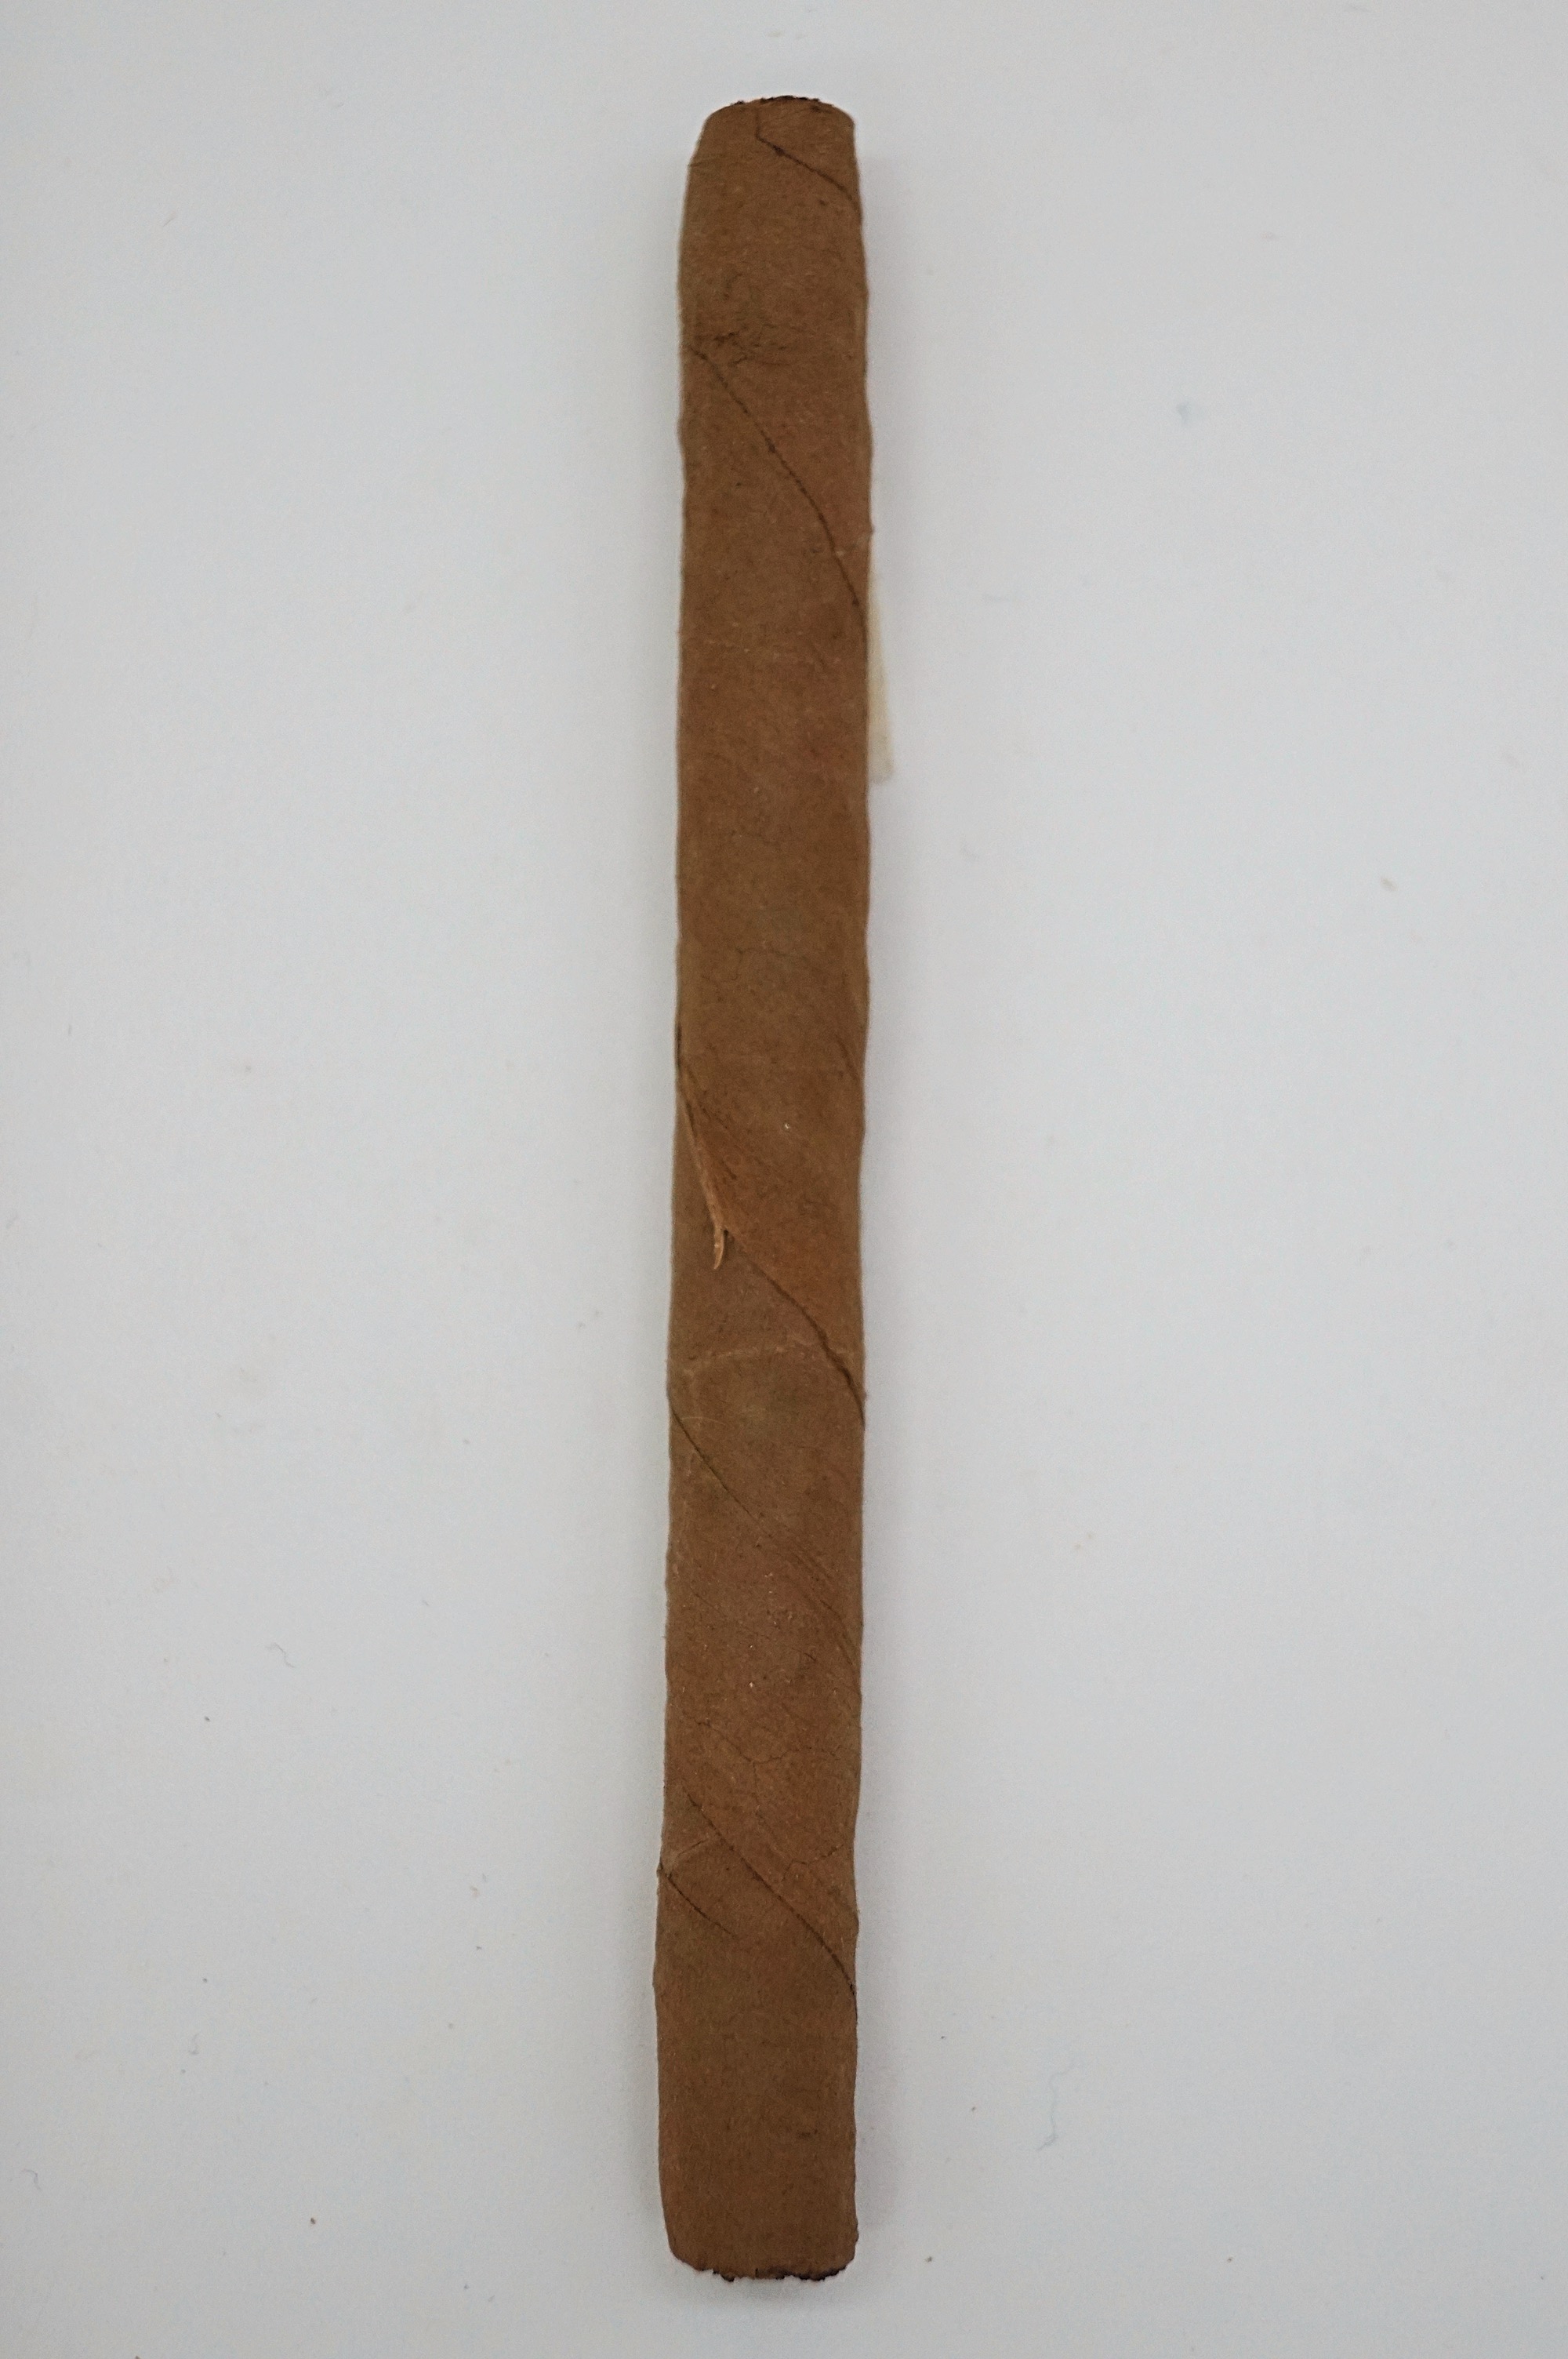 Dark Fired Kentucky Cigarillos Nr. 733